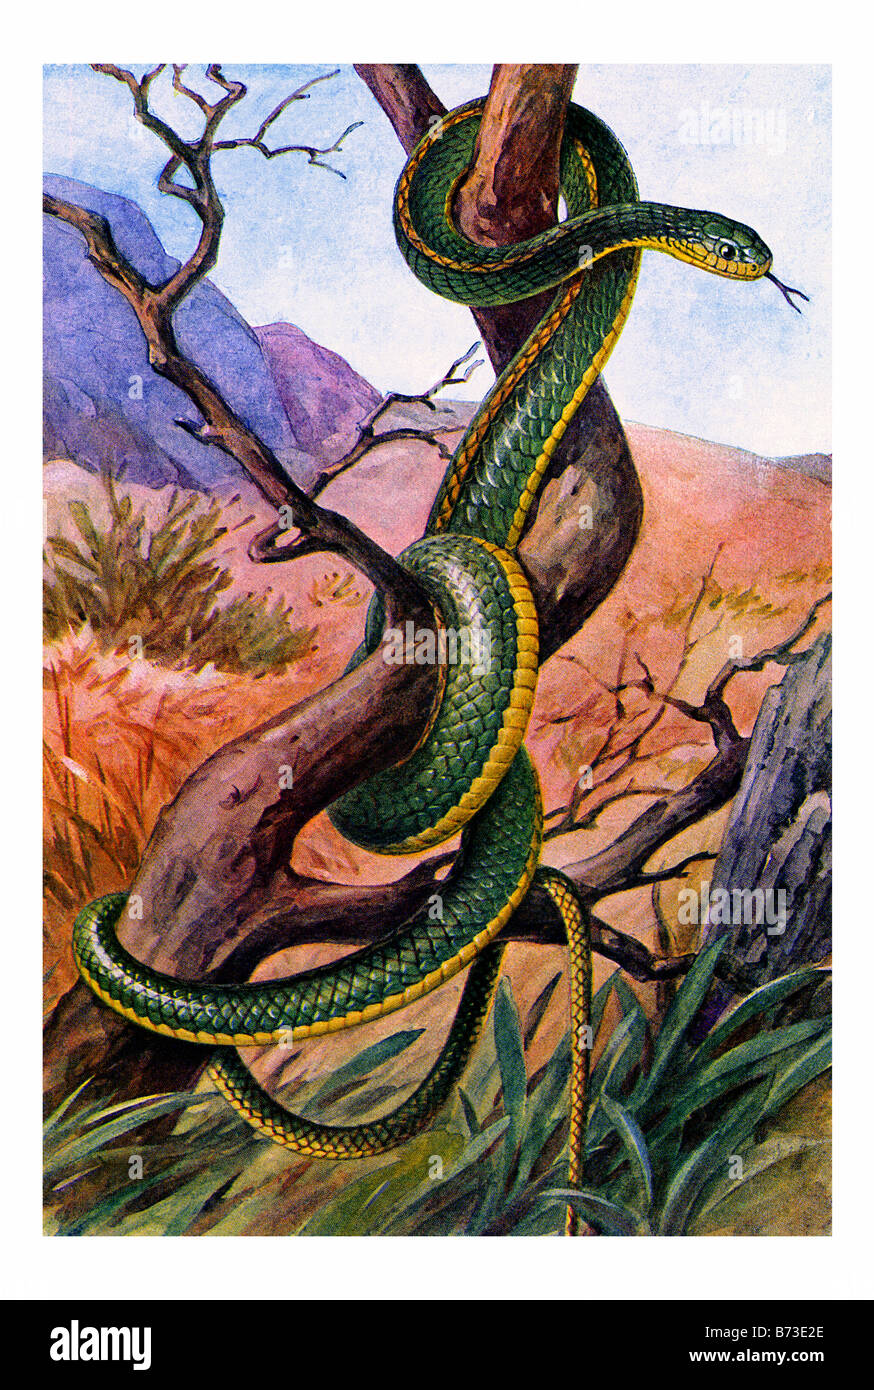 Ilustración de un Chironius carinatus - El machete Savane o Whipsnake amazónica Foto de stock